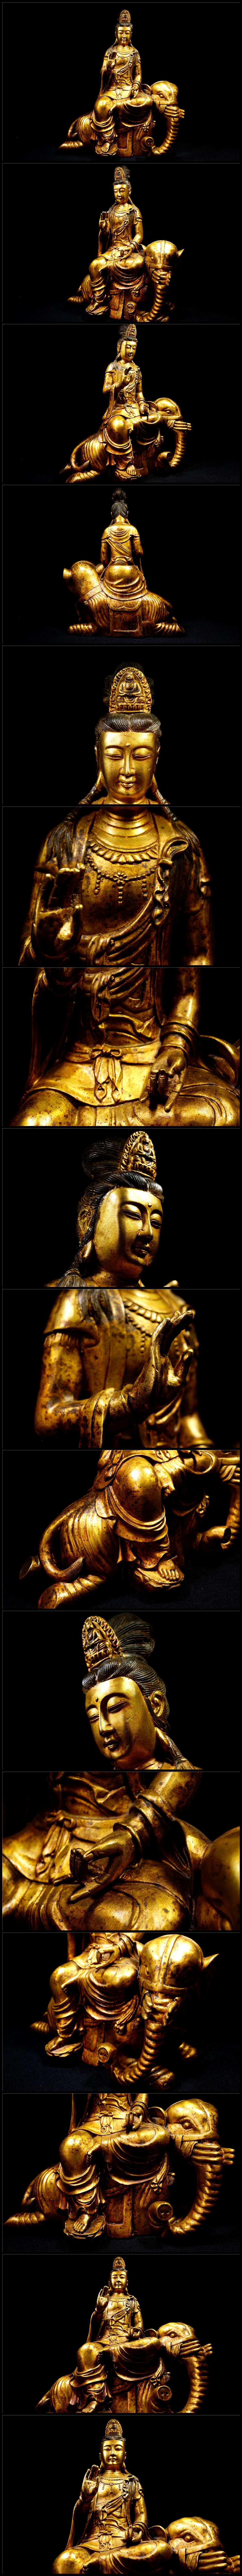 銀座金銅細工 仏教 大迫力文殊菩造像高彫 鎮宅 開運置物 極上質 高さ約40cm 仏像